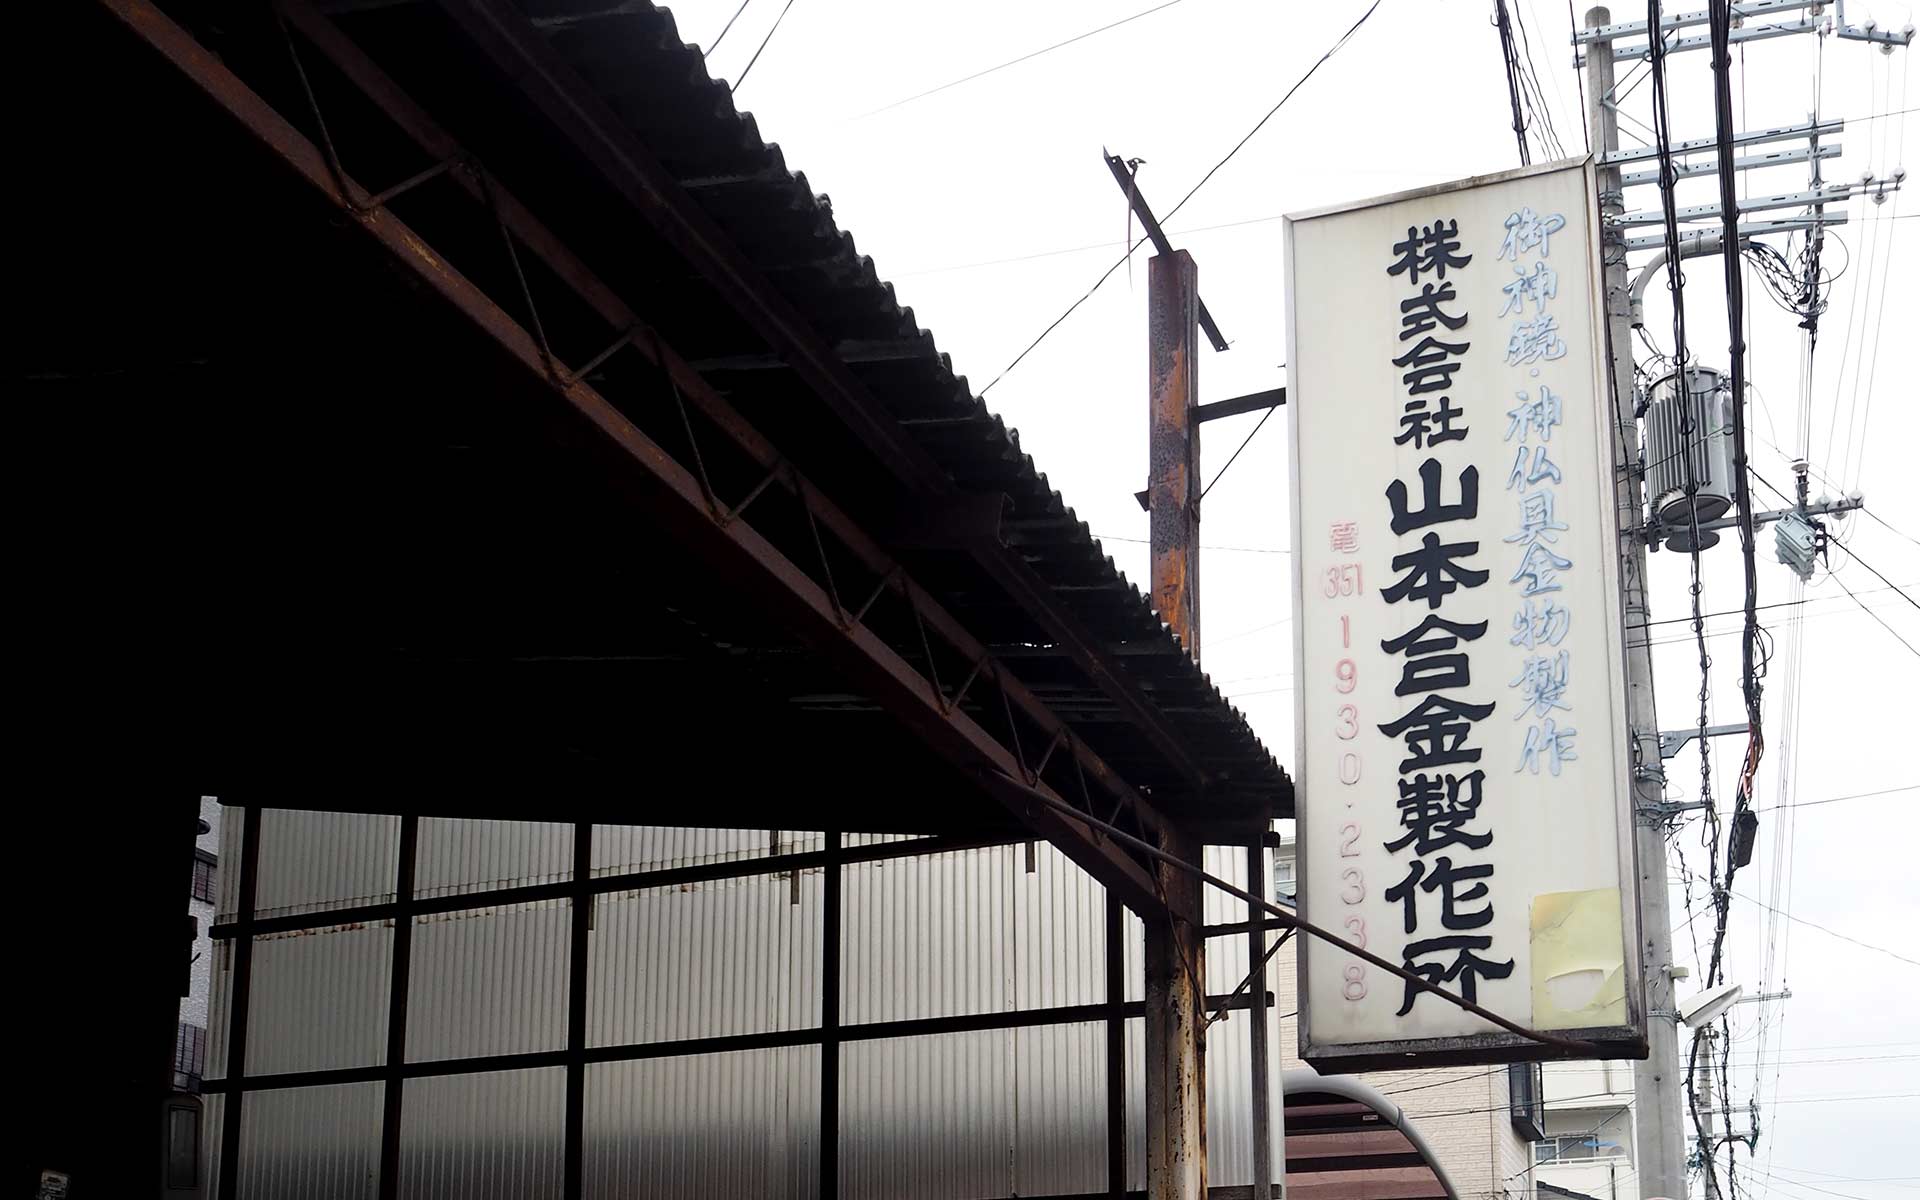 京都下京区にある山本合金製作所の工房